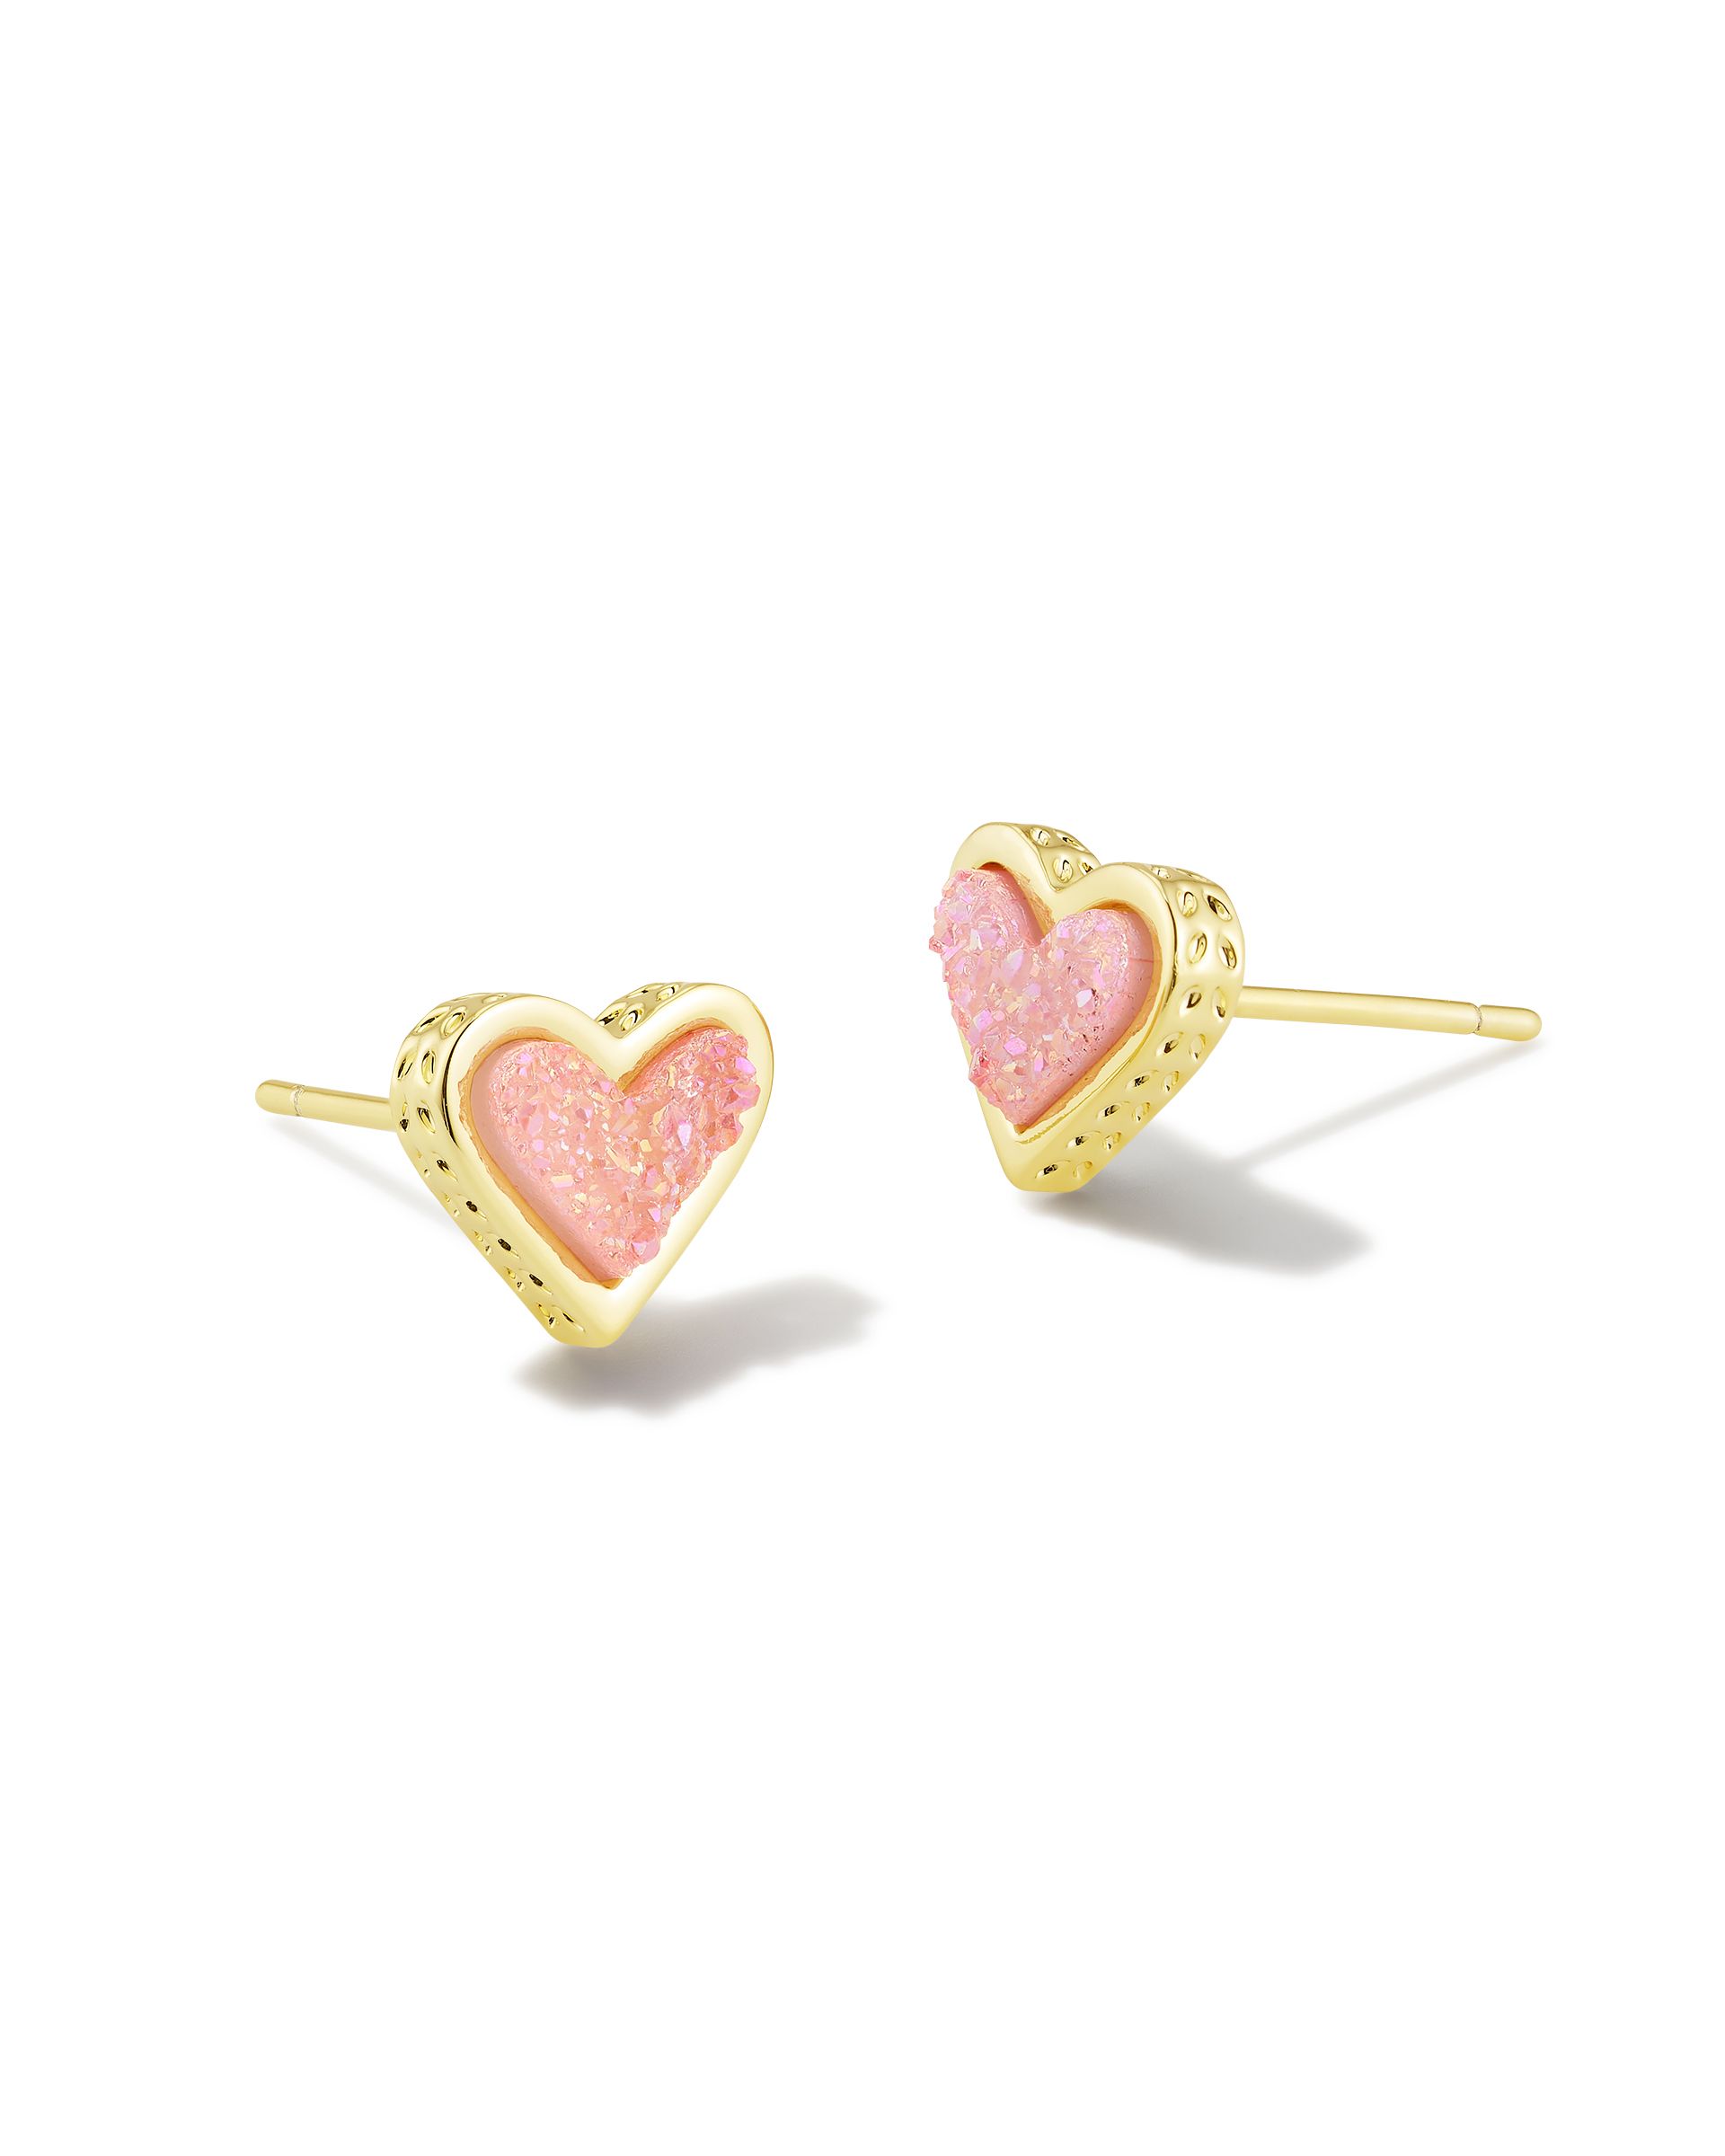 Framed Ari Heart Gold Stud Earrings in Light Pink Drusy | Kendra Scott | Kendra Scott